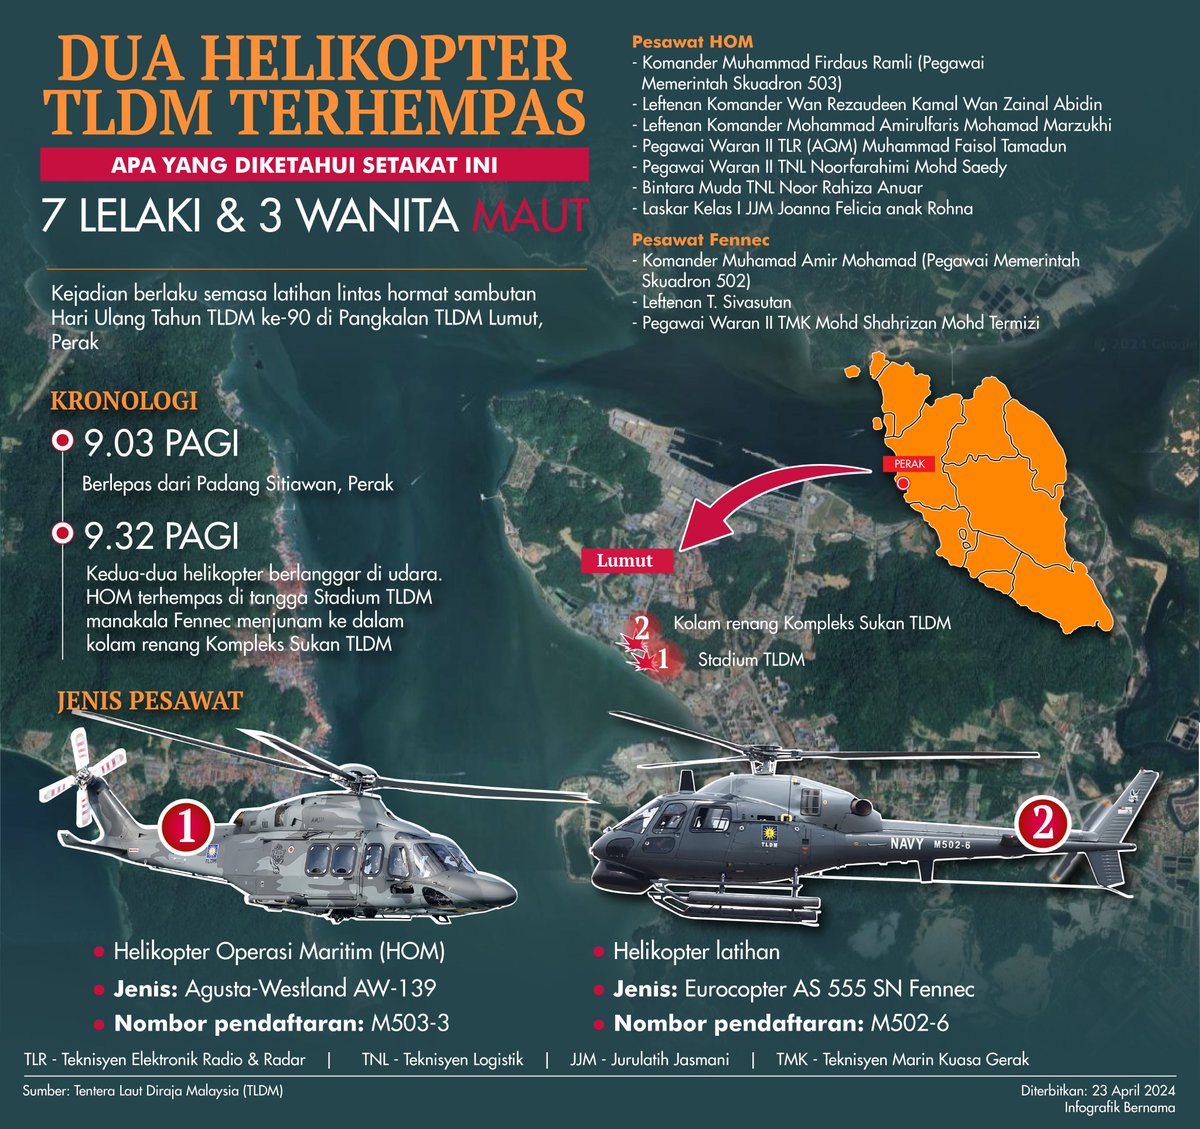 #infografik Dua helikopter TLDM terhempas (apa yang diketahui setakat ini)

📸 Bernama